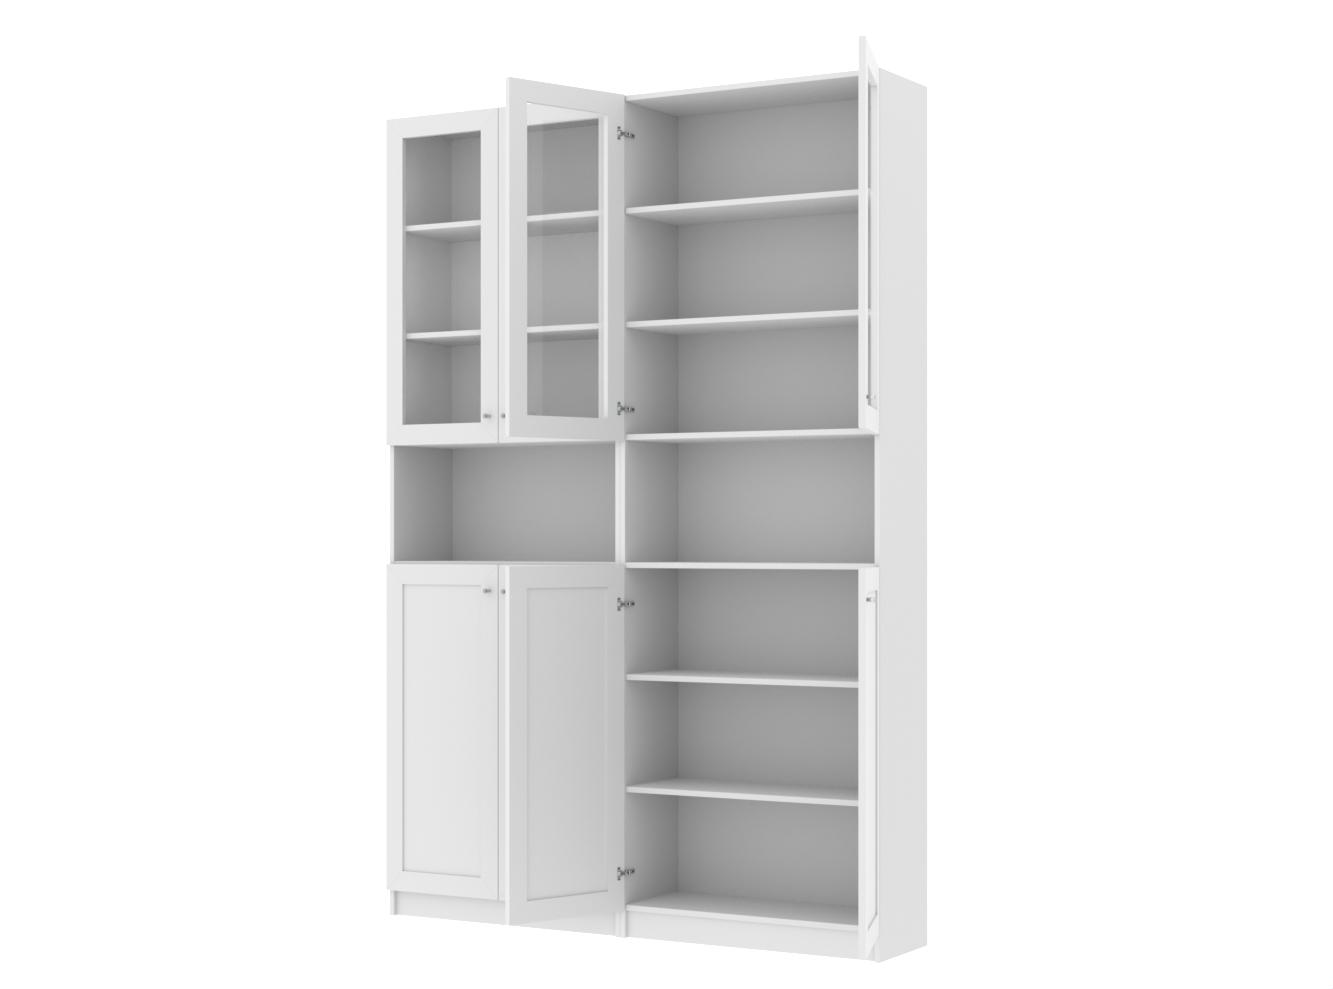 Изображение товара Книжный шкаф Билли 341 white ИКЕА (IKEA), 160x30x237 см на сайте adeta.ru